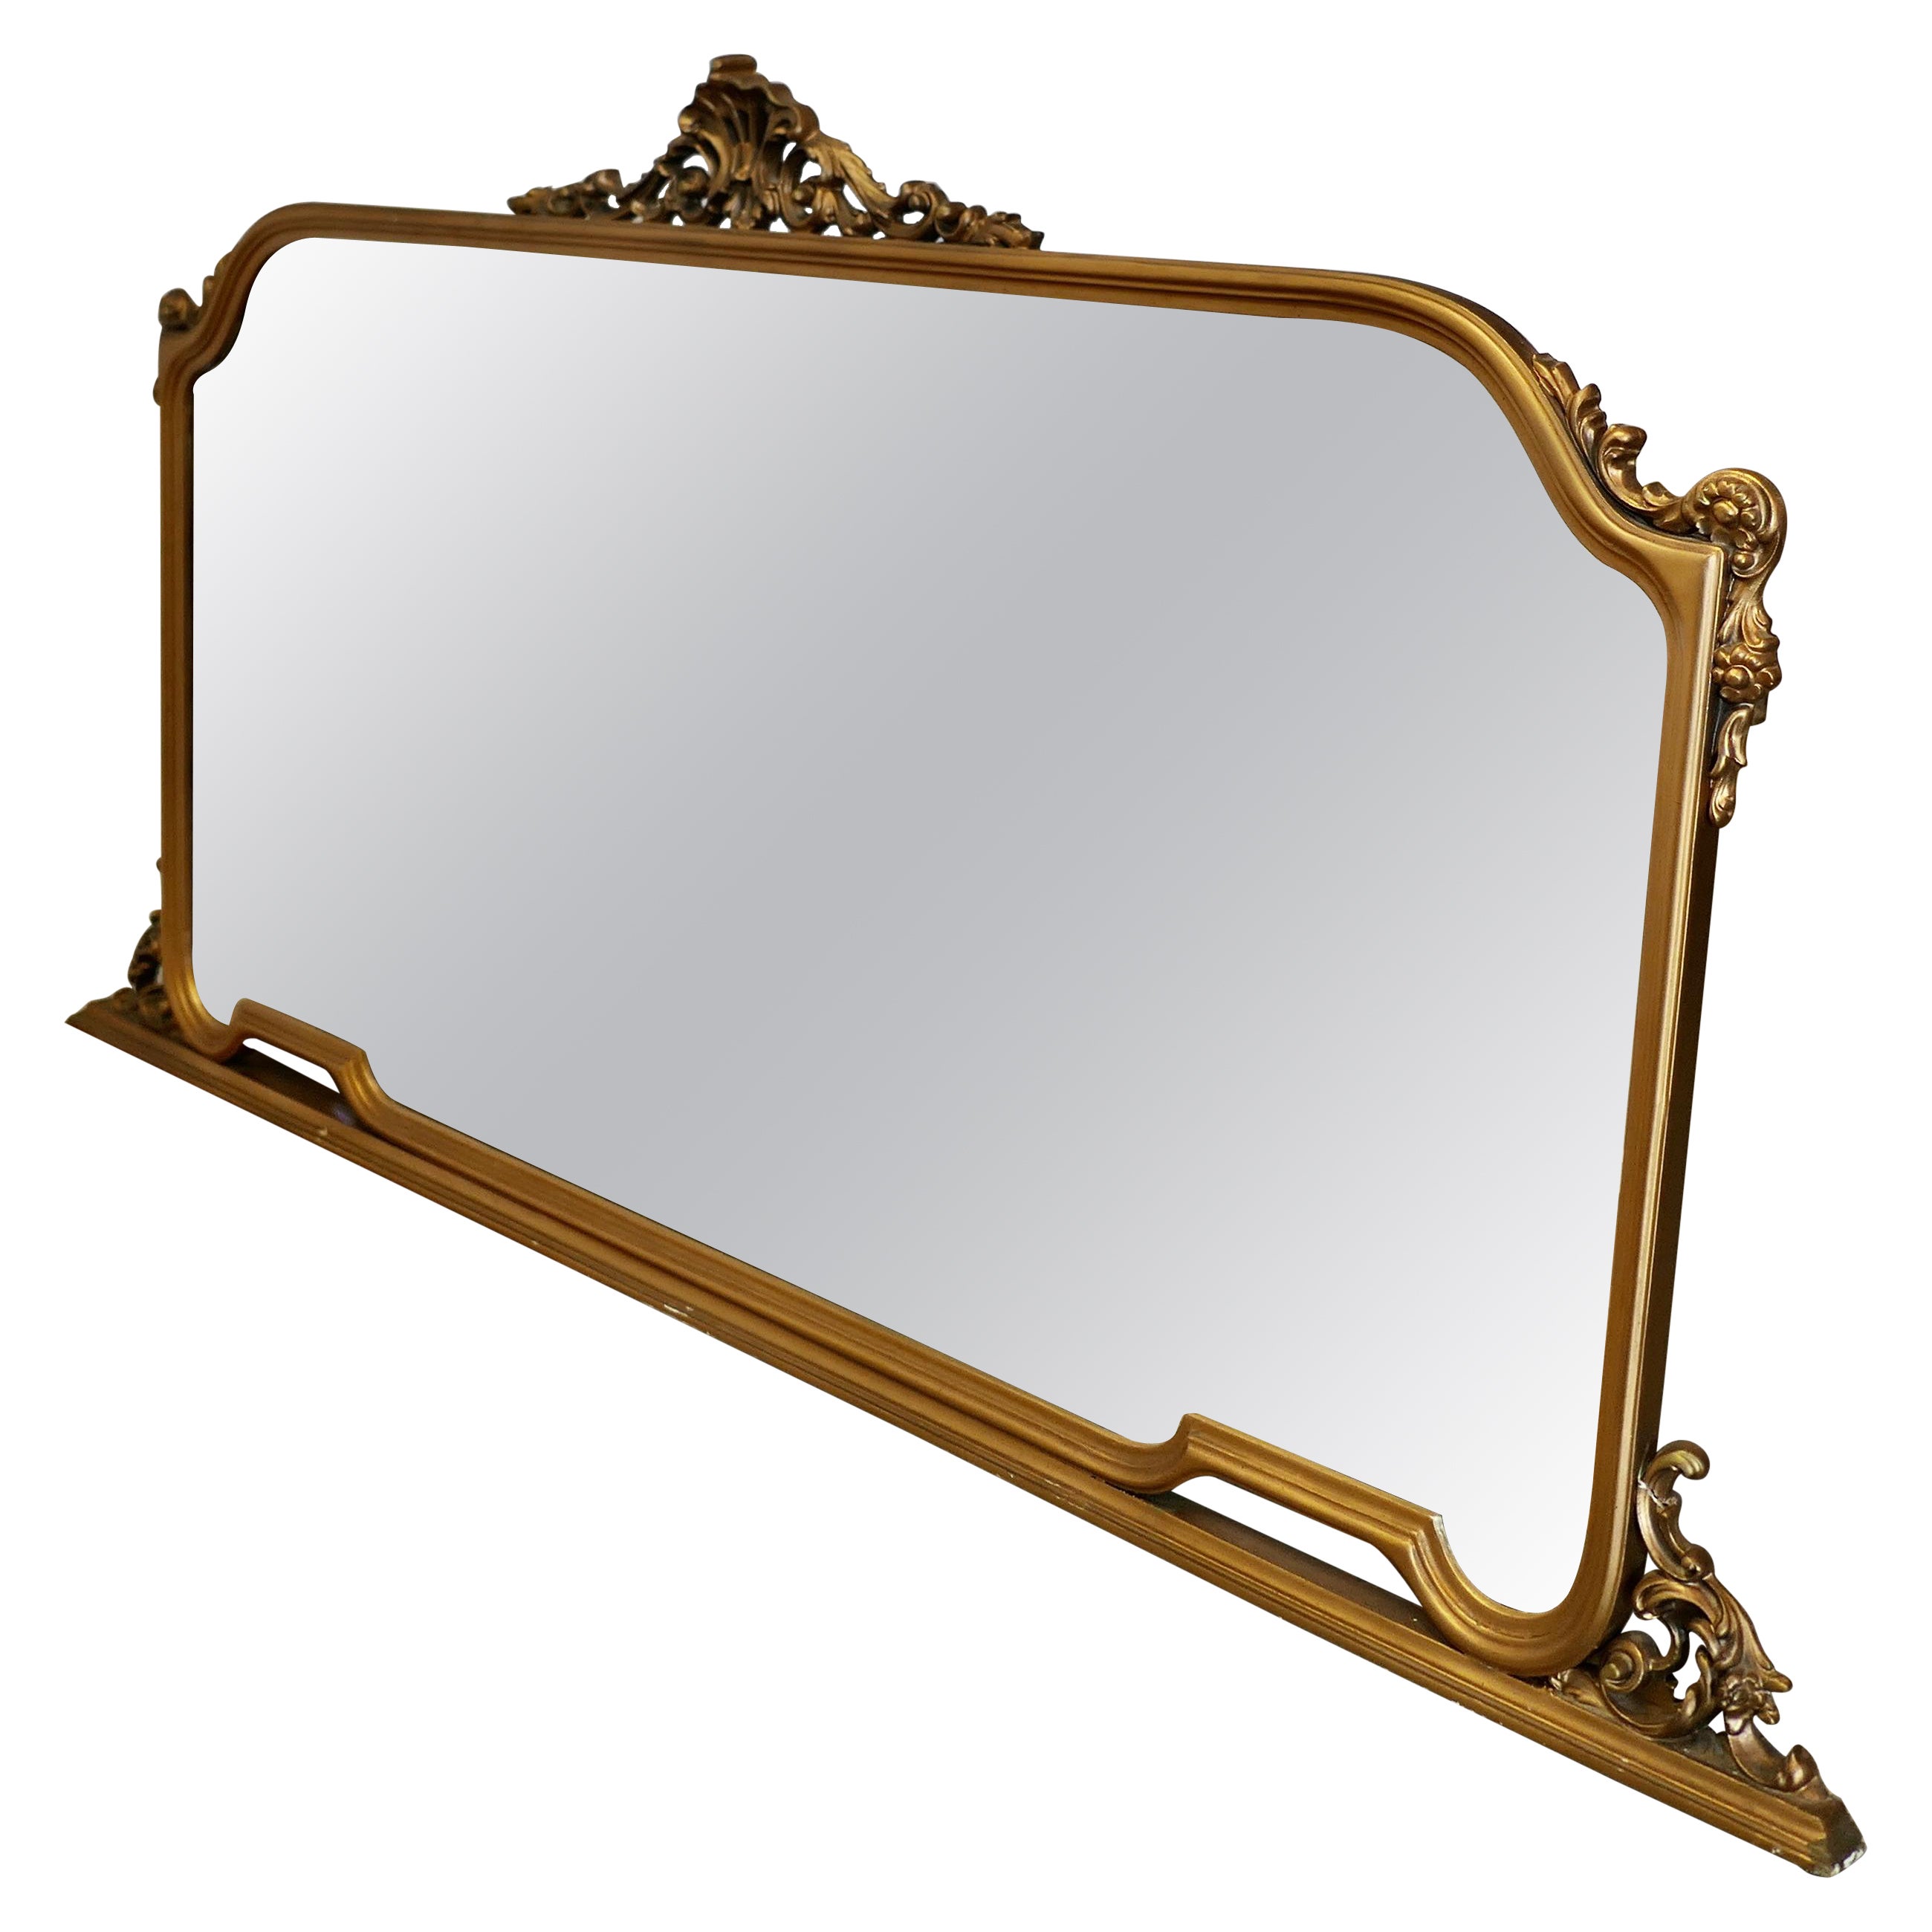 Grand miroir de cheminée en bois doré    Ce miroir a un magnifique cadre doré  